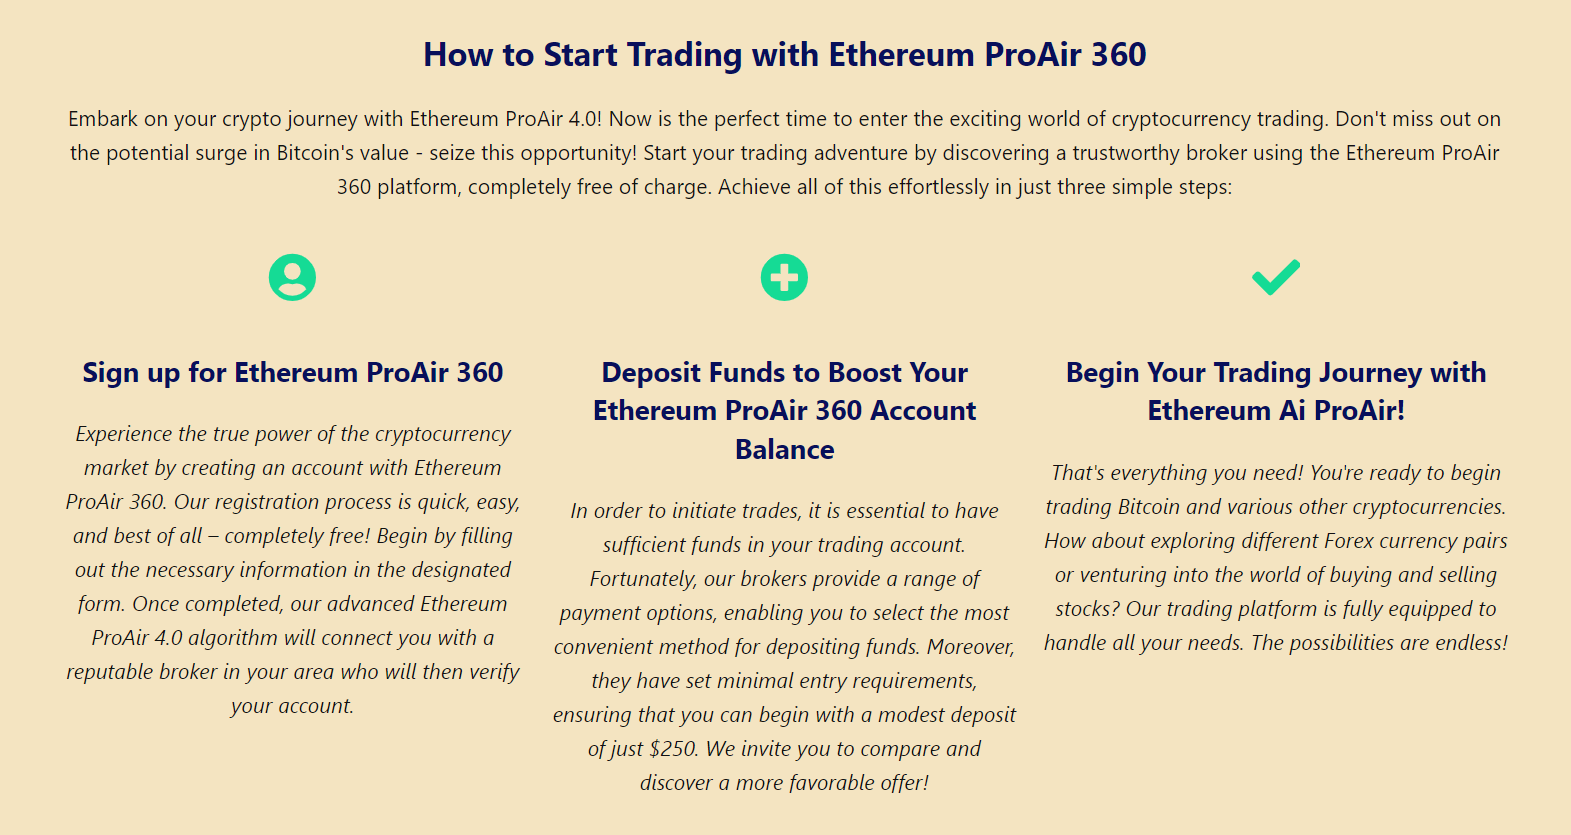 Ethereum ProAir 360 - Ticarete nasıl başlanır?